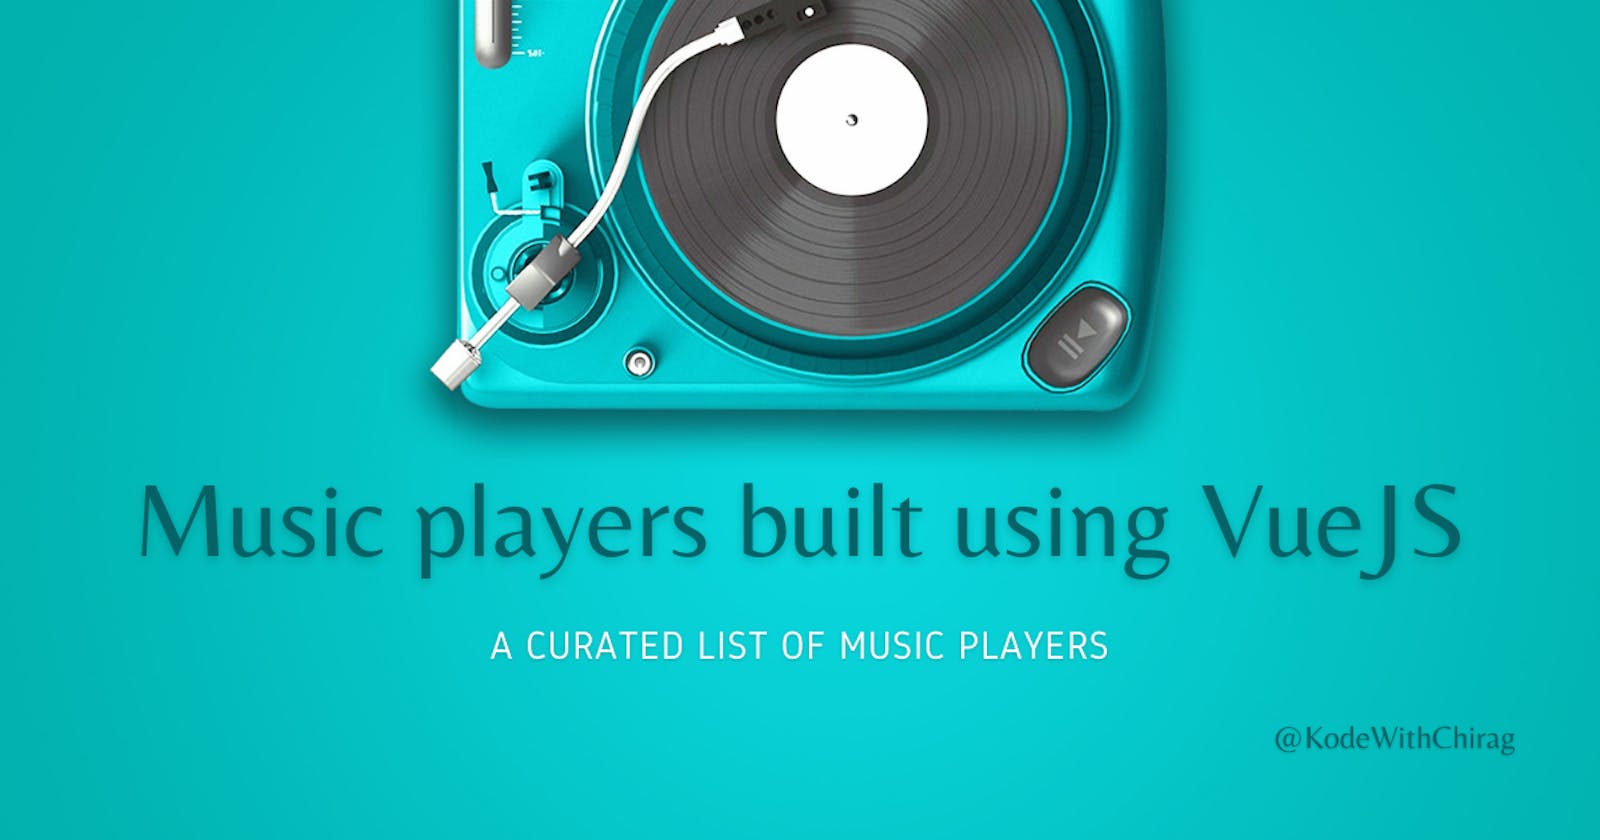 Music players built using VueJS